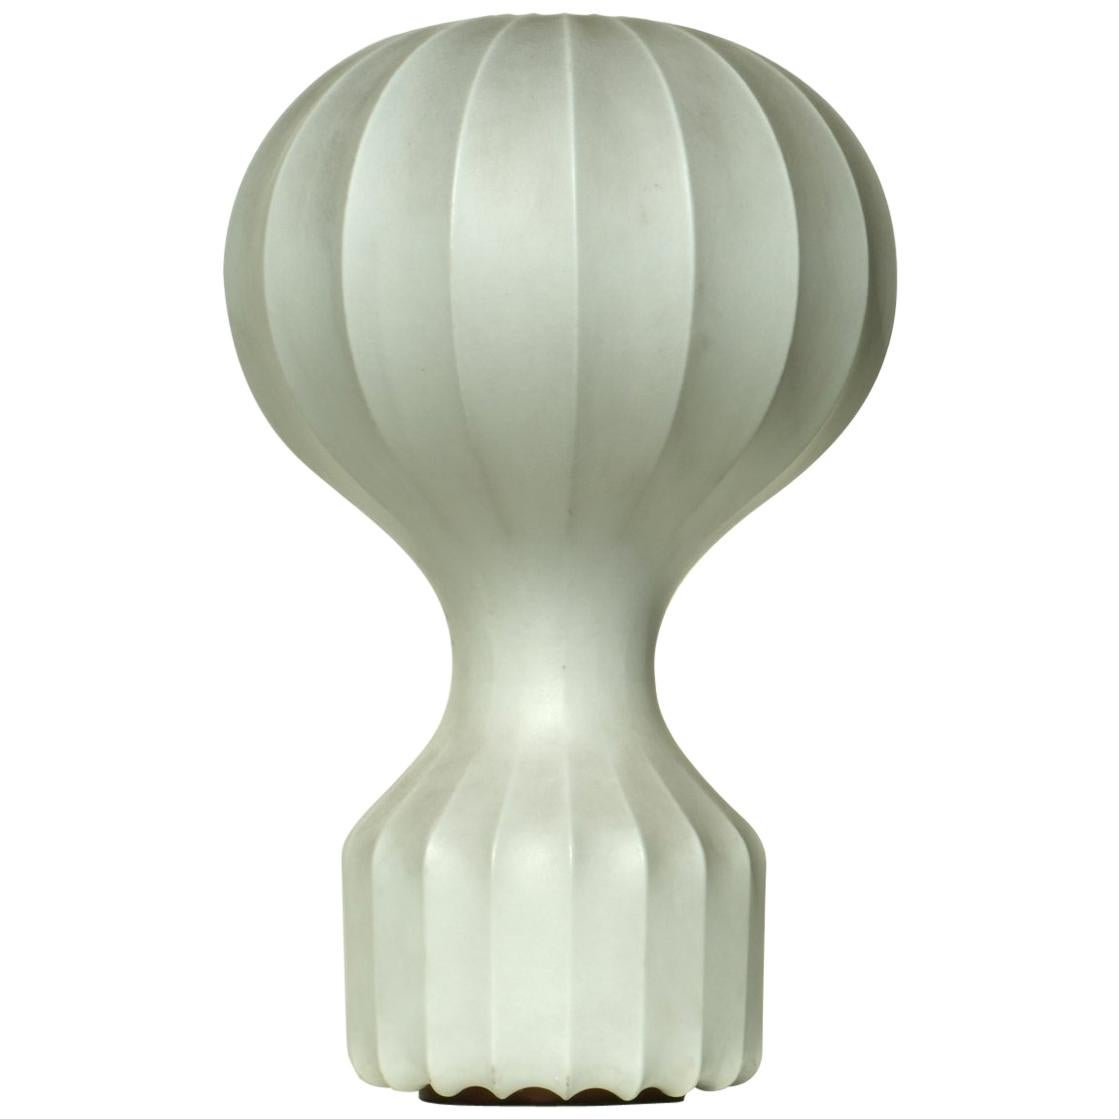 "Gatto" by Castiglioni for Flos 1960s Italian Design Cocoon Table Lamp